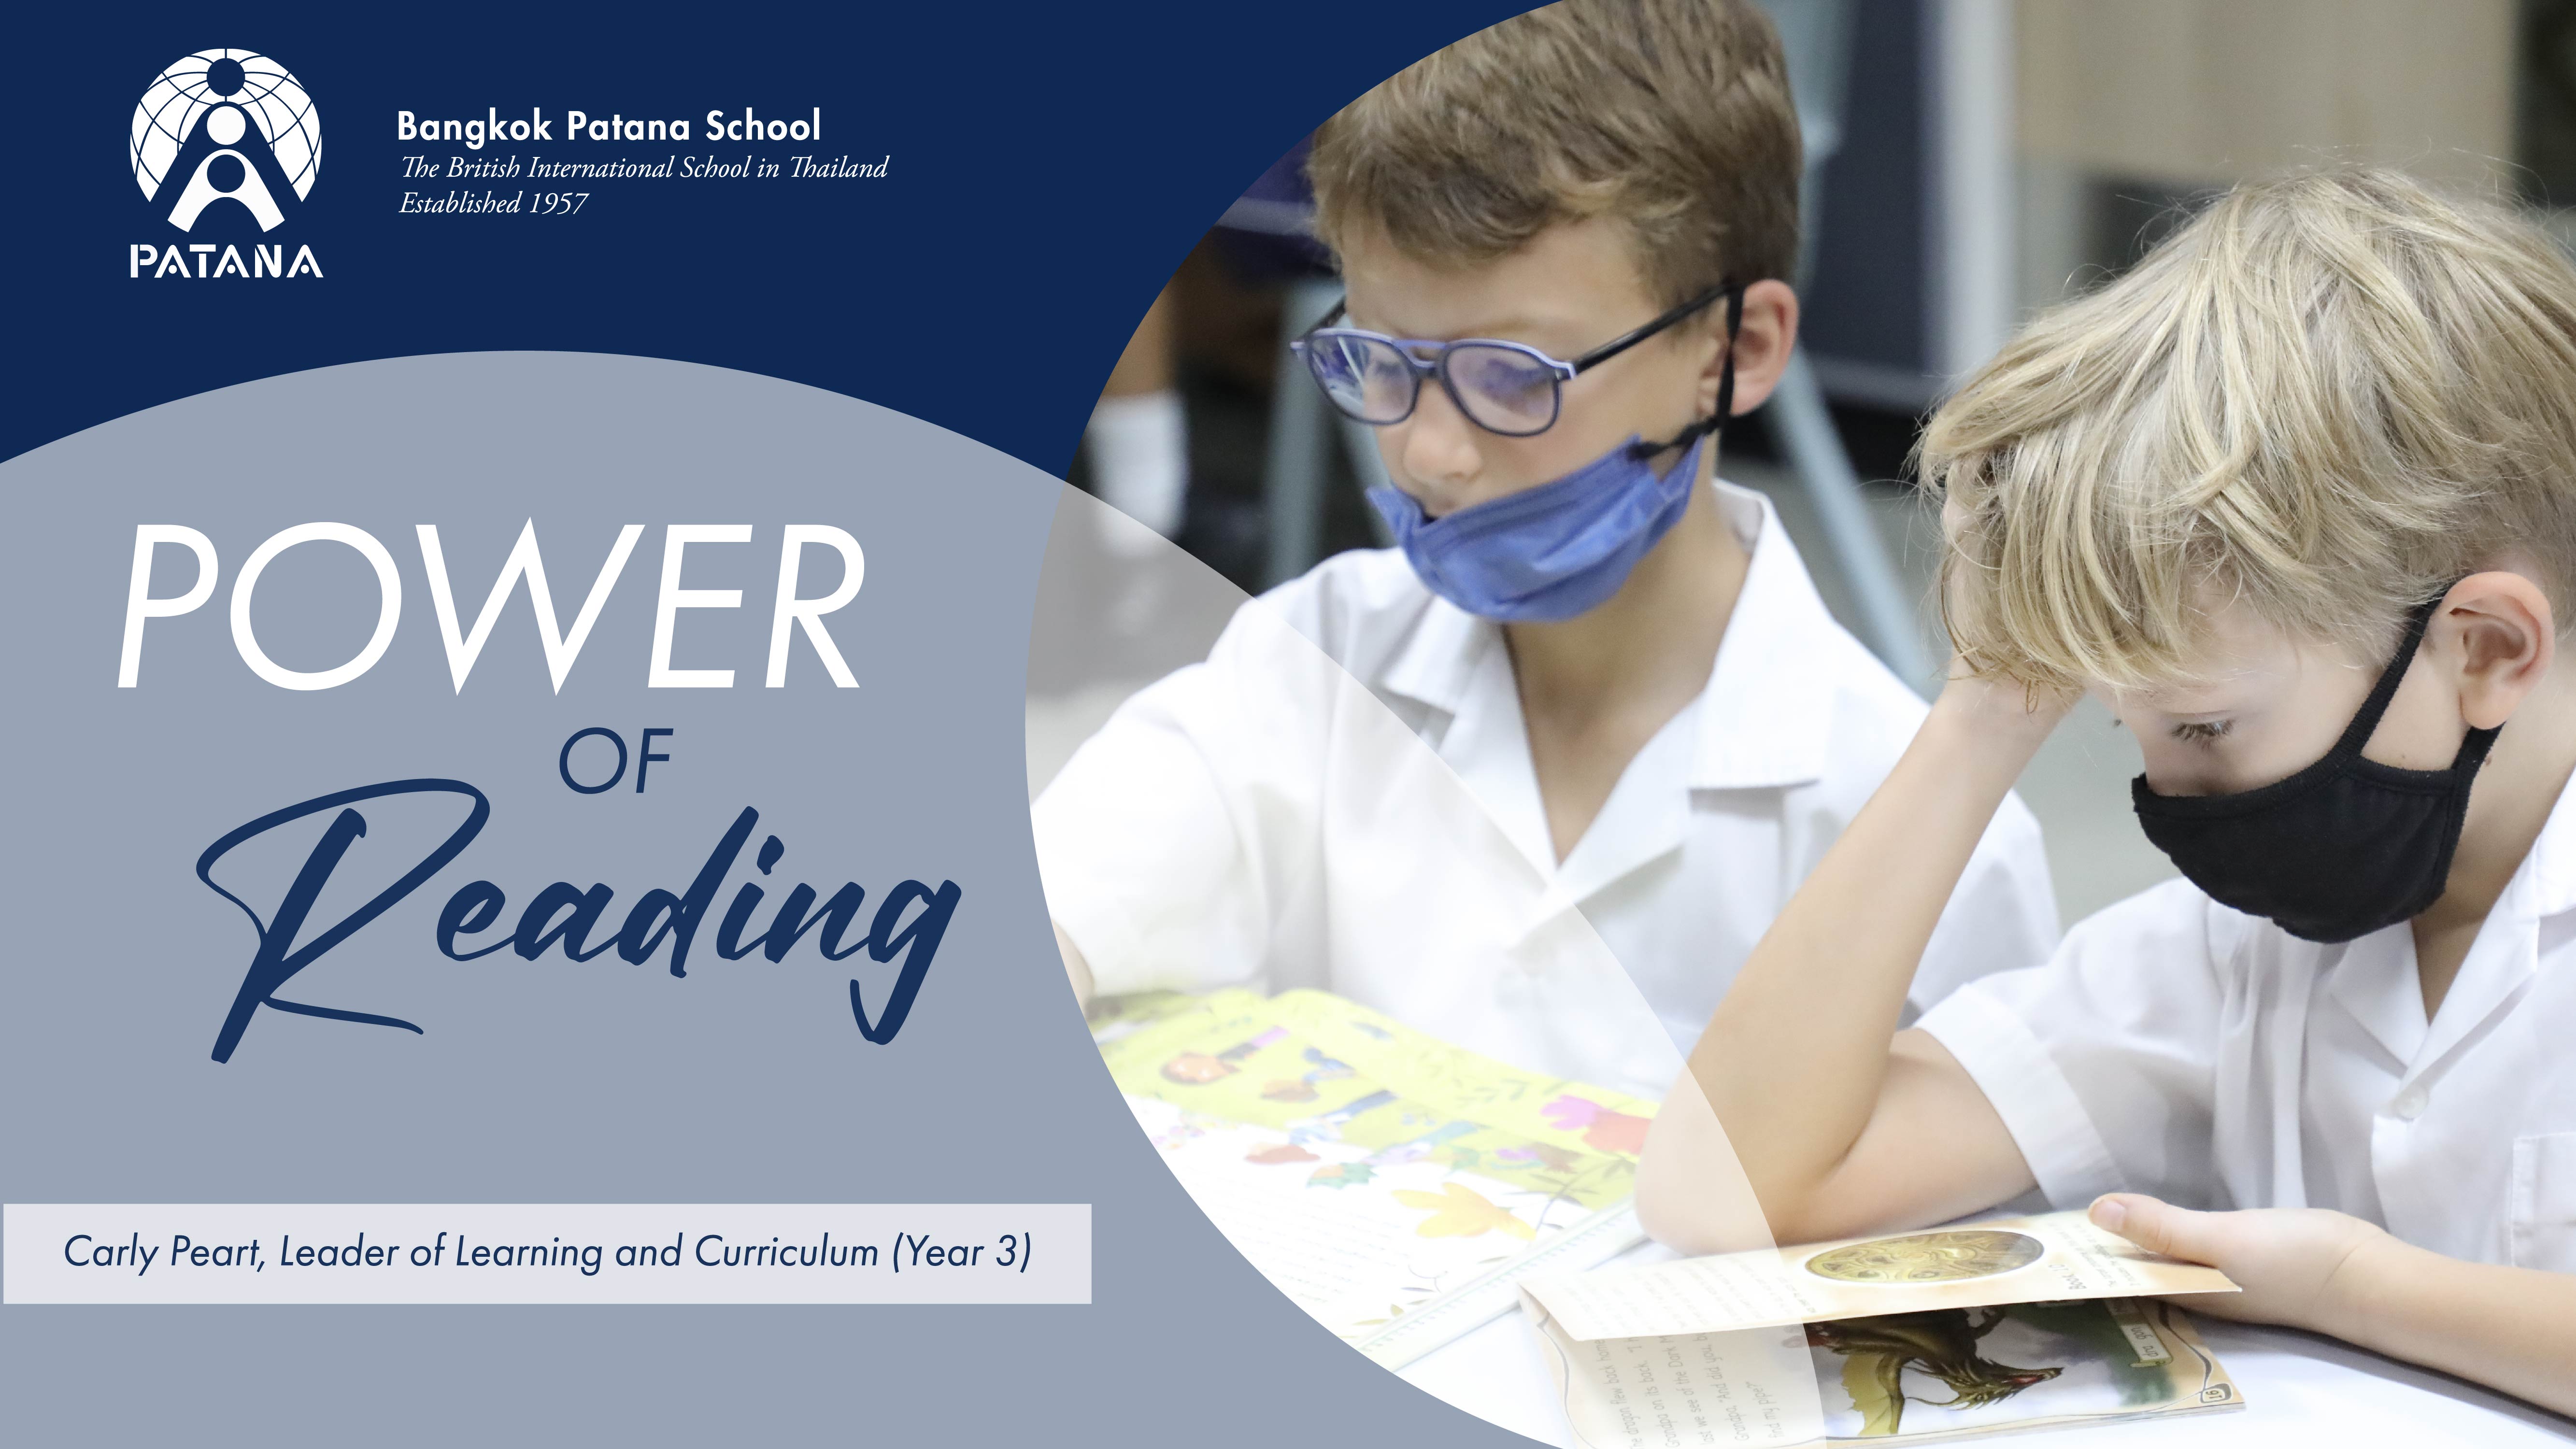 Power of Reading at Bangkok Patana School